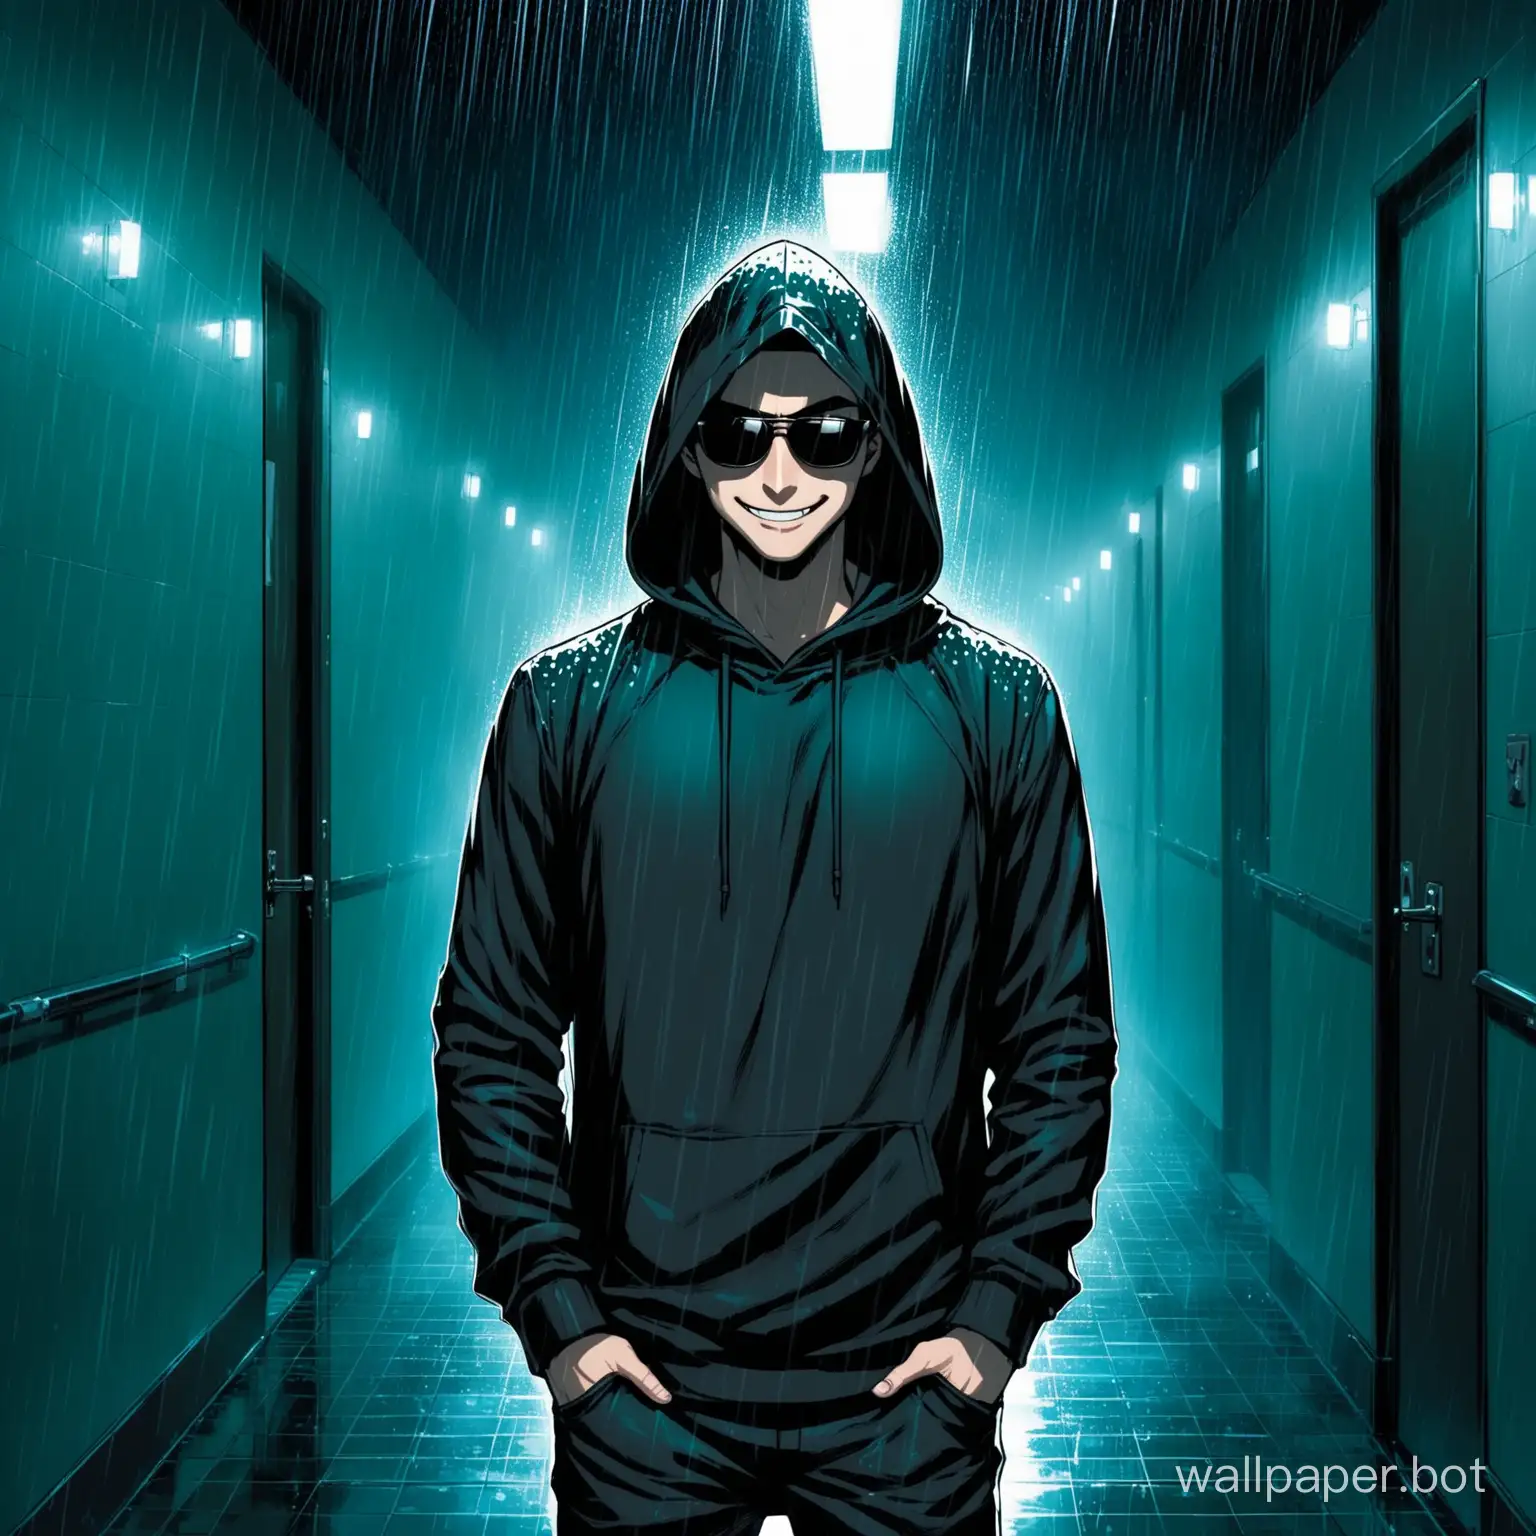 Mysterious-Figure-in-Black-Hoodie-Smirking-in-Rainy-Night-Corridor